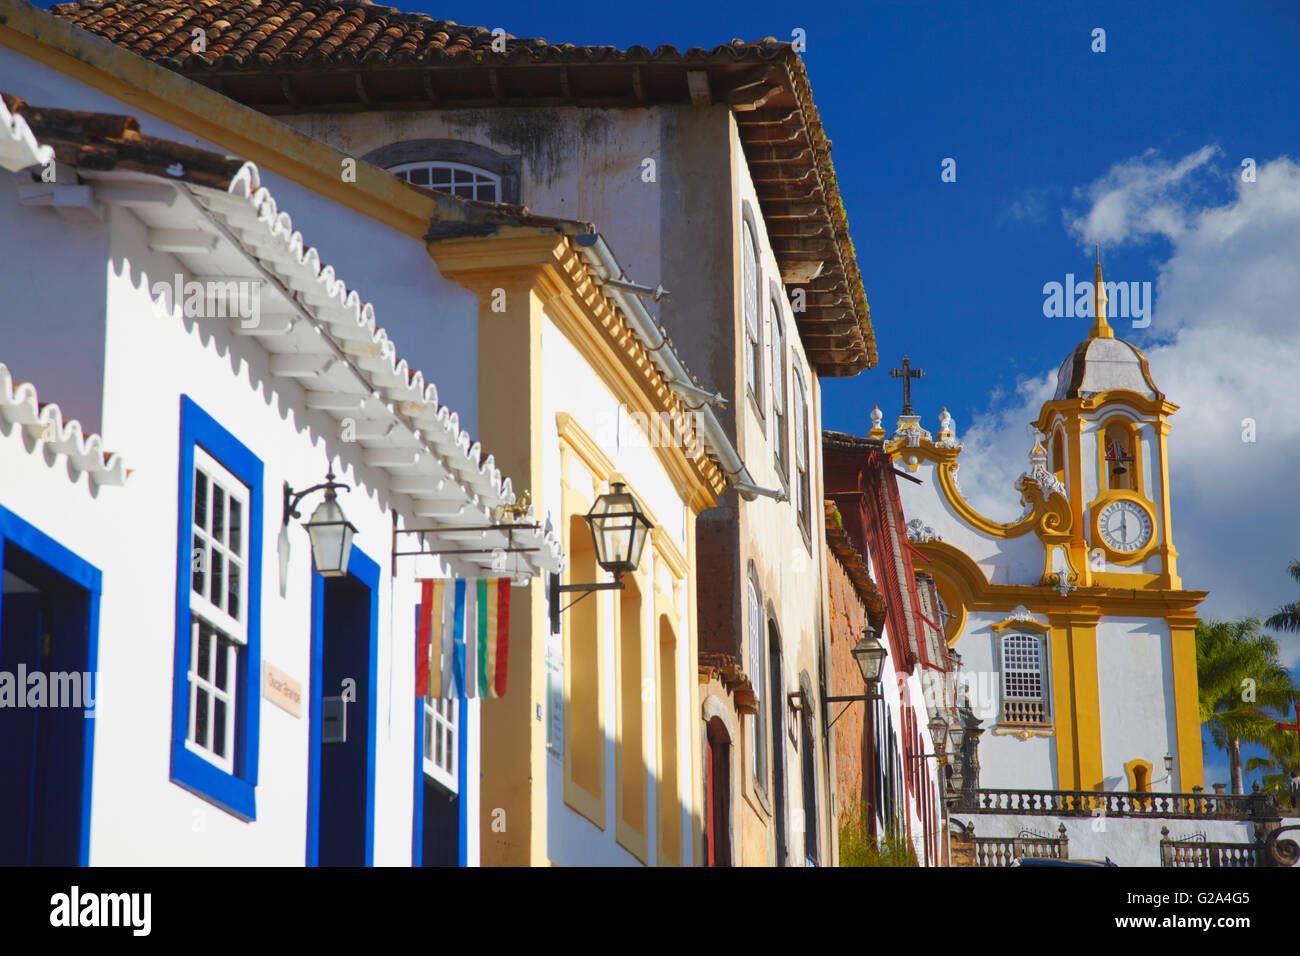 Les maisons coloniales et l'église Matriz de Santo Antonio, Tiradentes, Minas Gerais, Brésil Banque D'Images